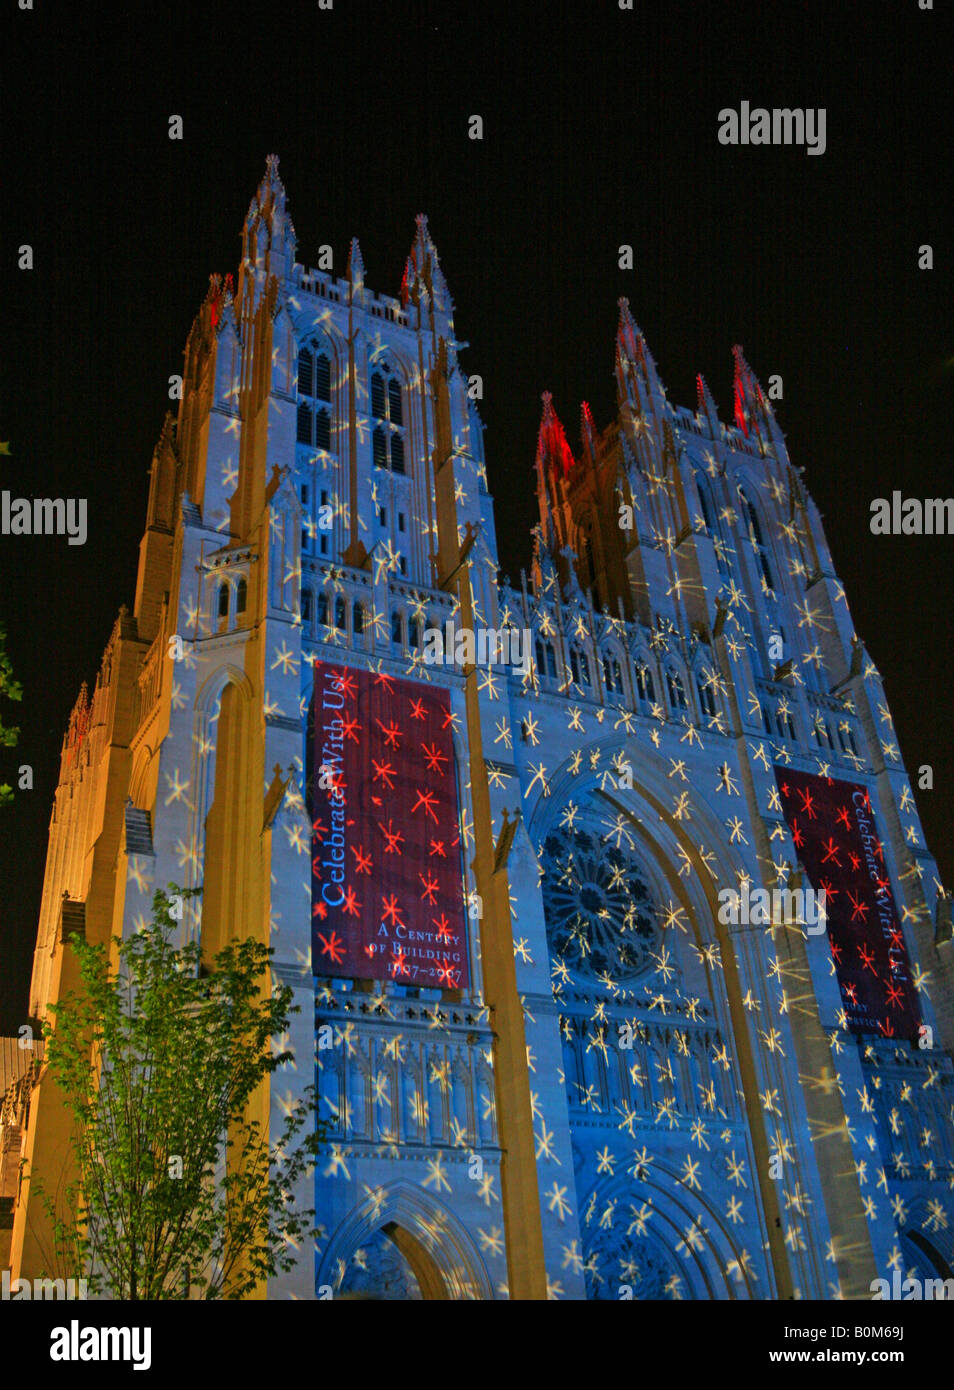 L'événement d'art public - l'éclairage de la Cathédrale Nationale américaine à Washington DC la nuit avec une transparence de ciel bleu et les étoiles. Banque D'Images